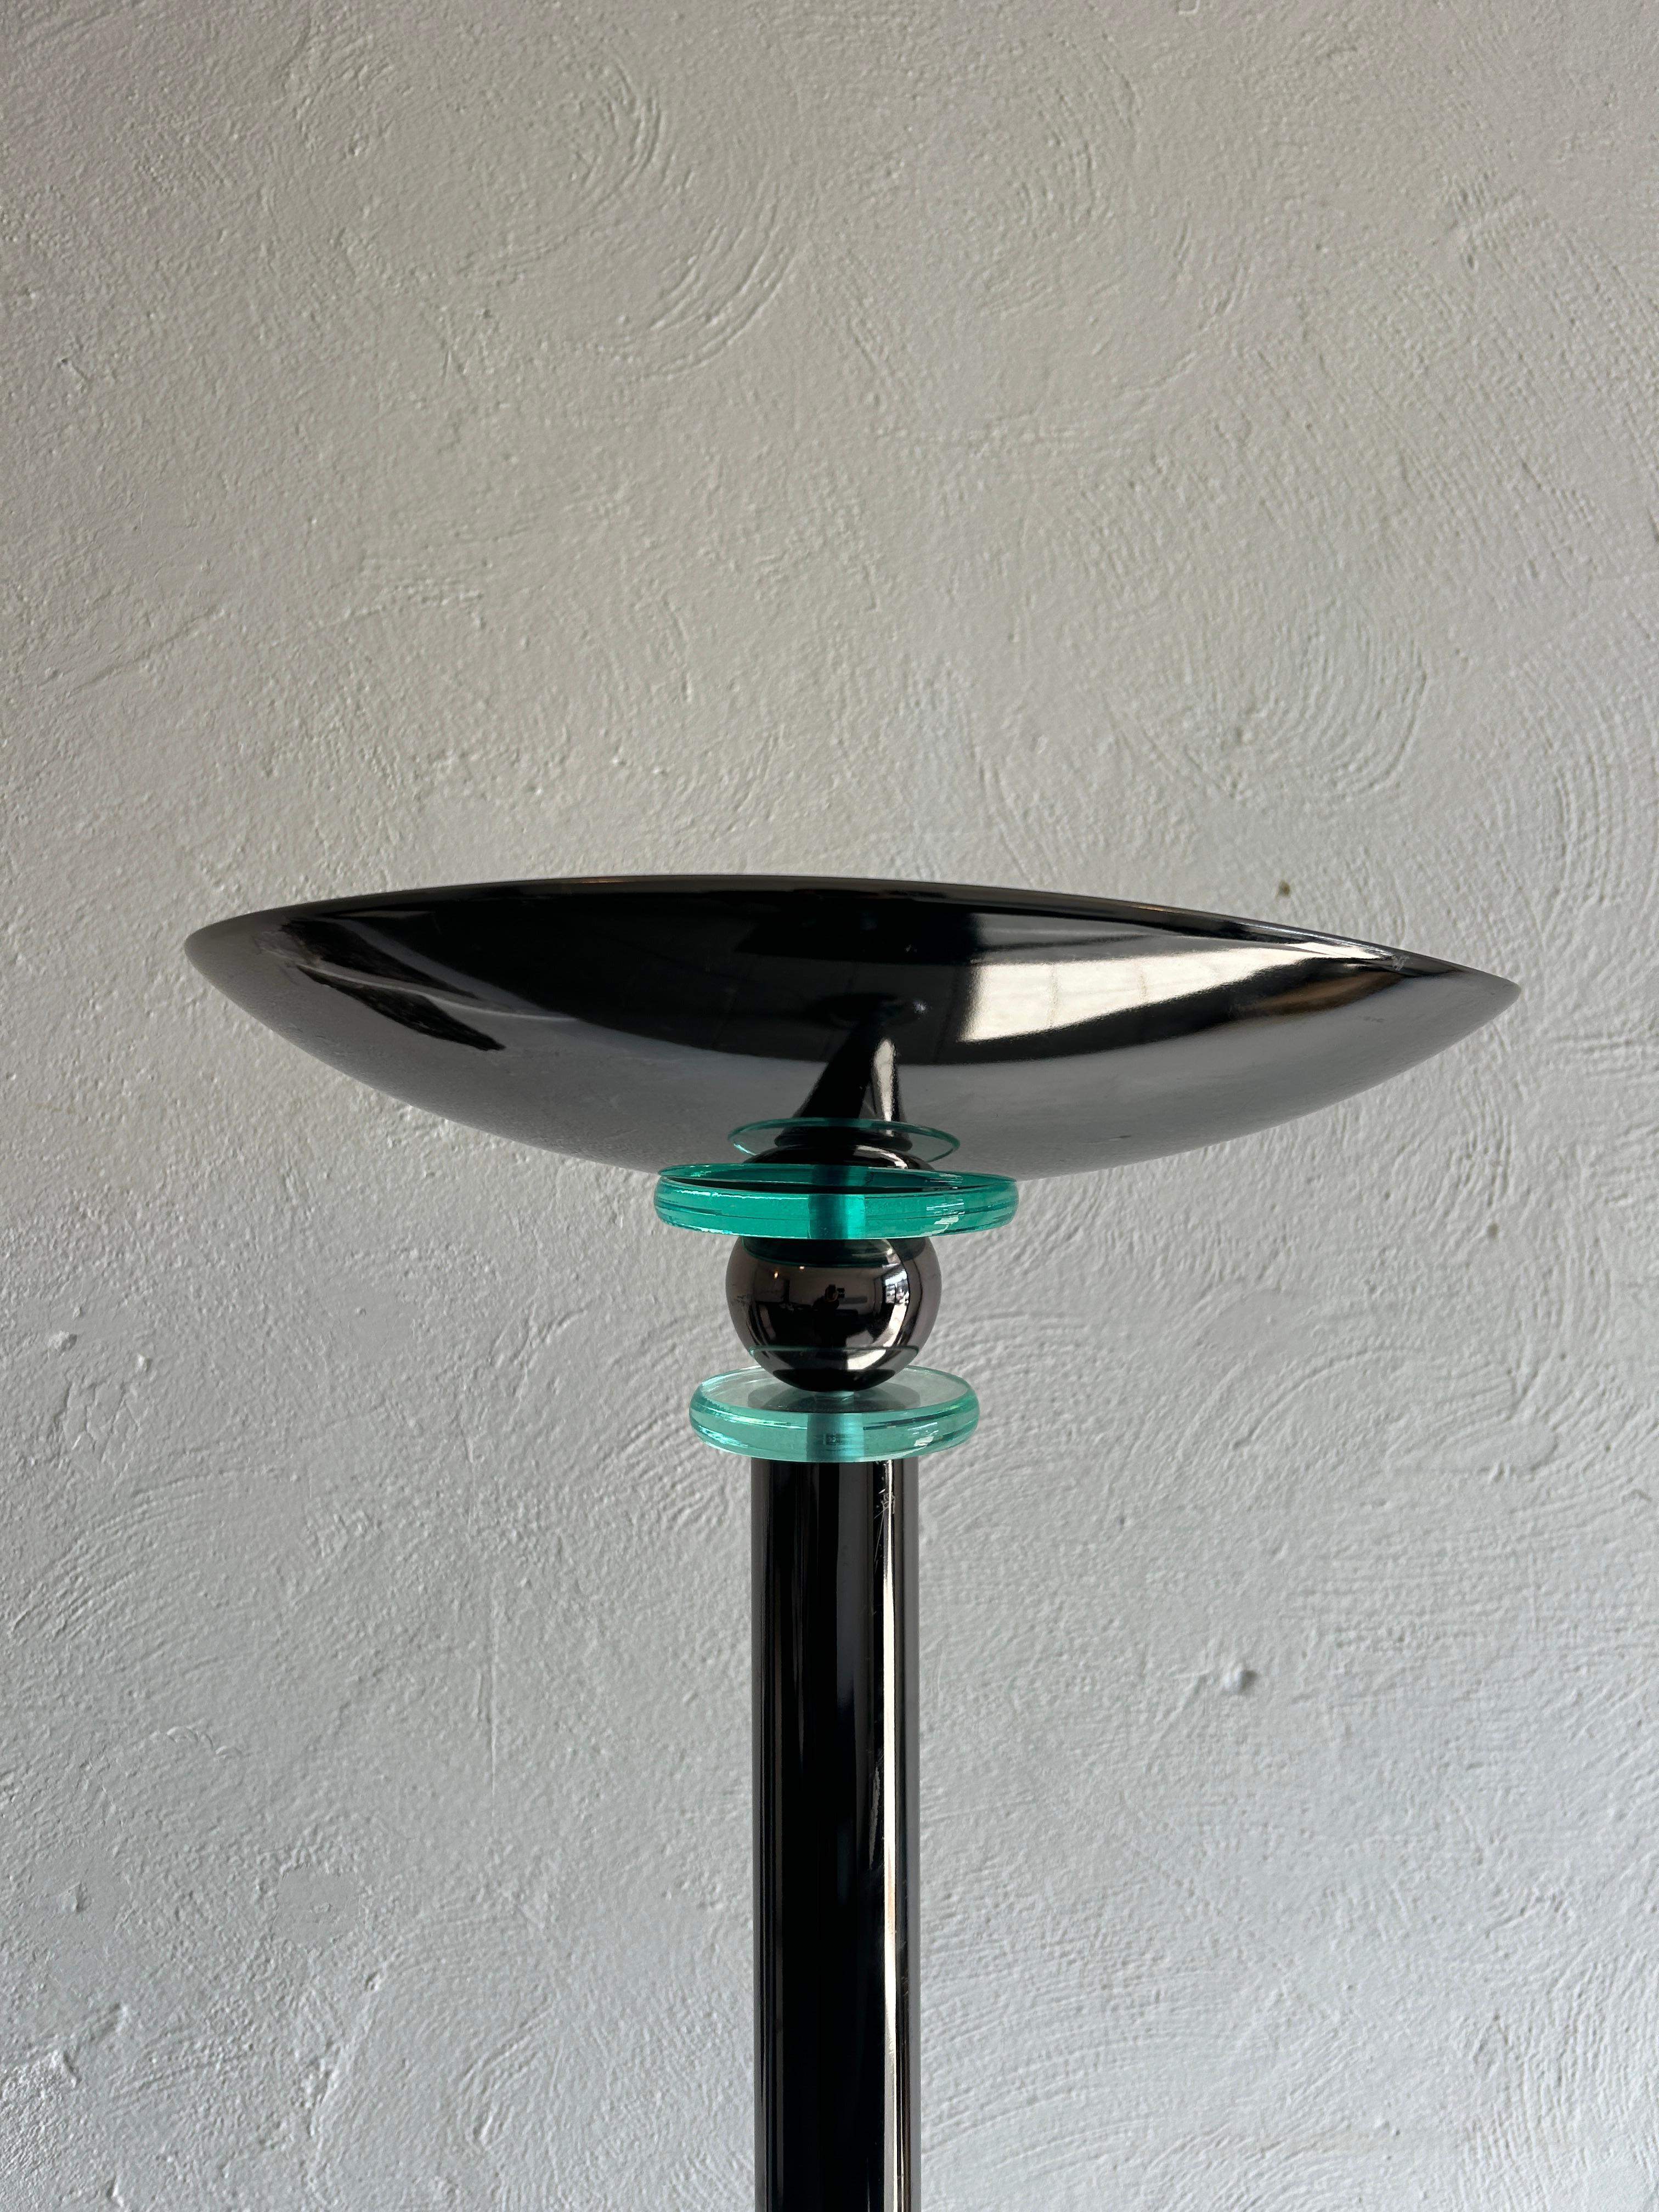 Lampadaire torchère post-moderne gris chrome bleu verre. La lampe fonctionne à 100 %. Design/One Modern très unique. Situé à Brooklyn NYC.


Bon état 
Variateur d'intensité intégré
Prise 120v USA 
Ampoule halogène 